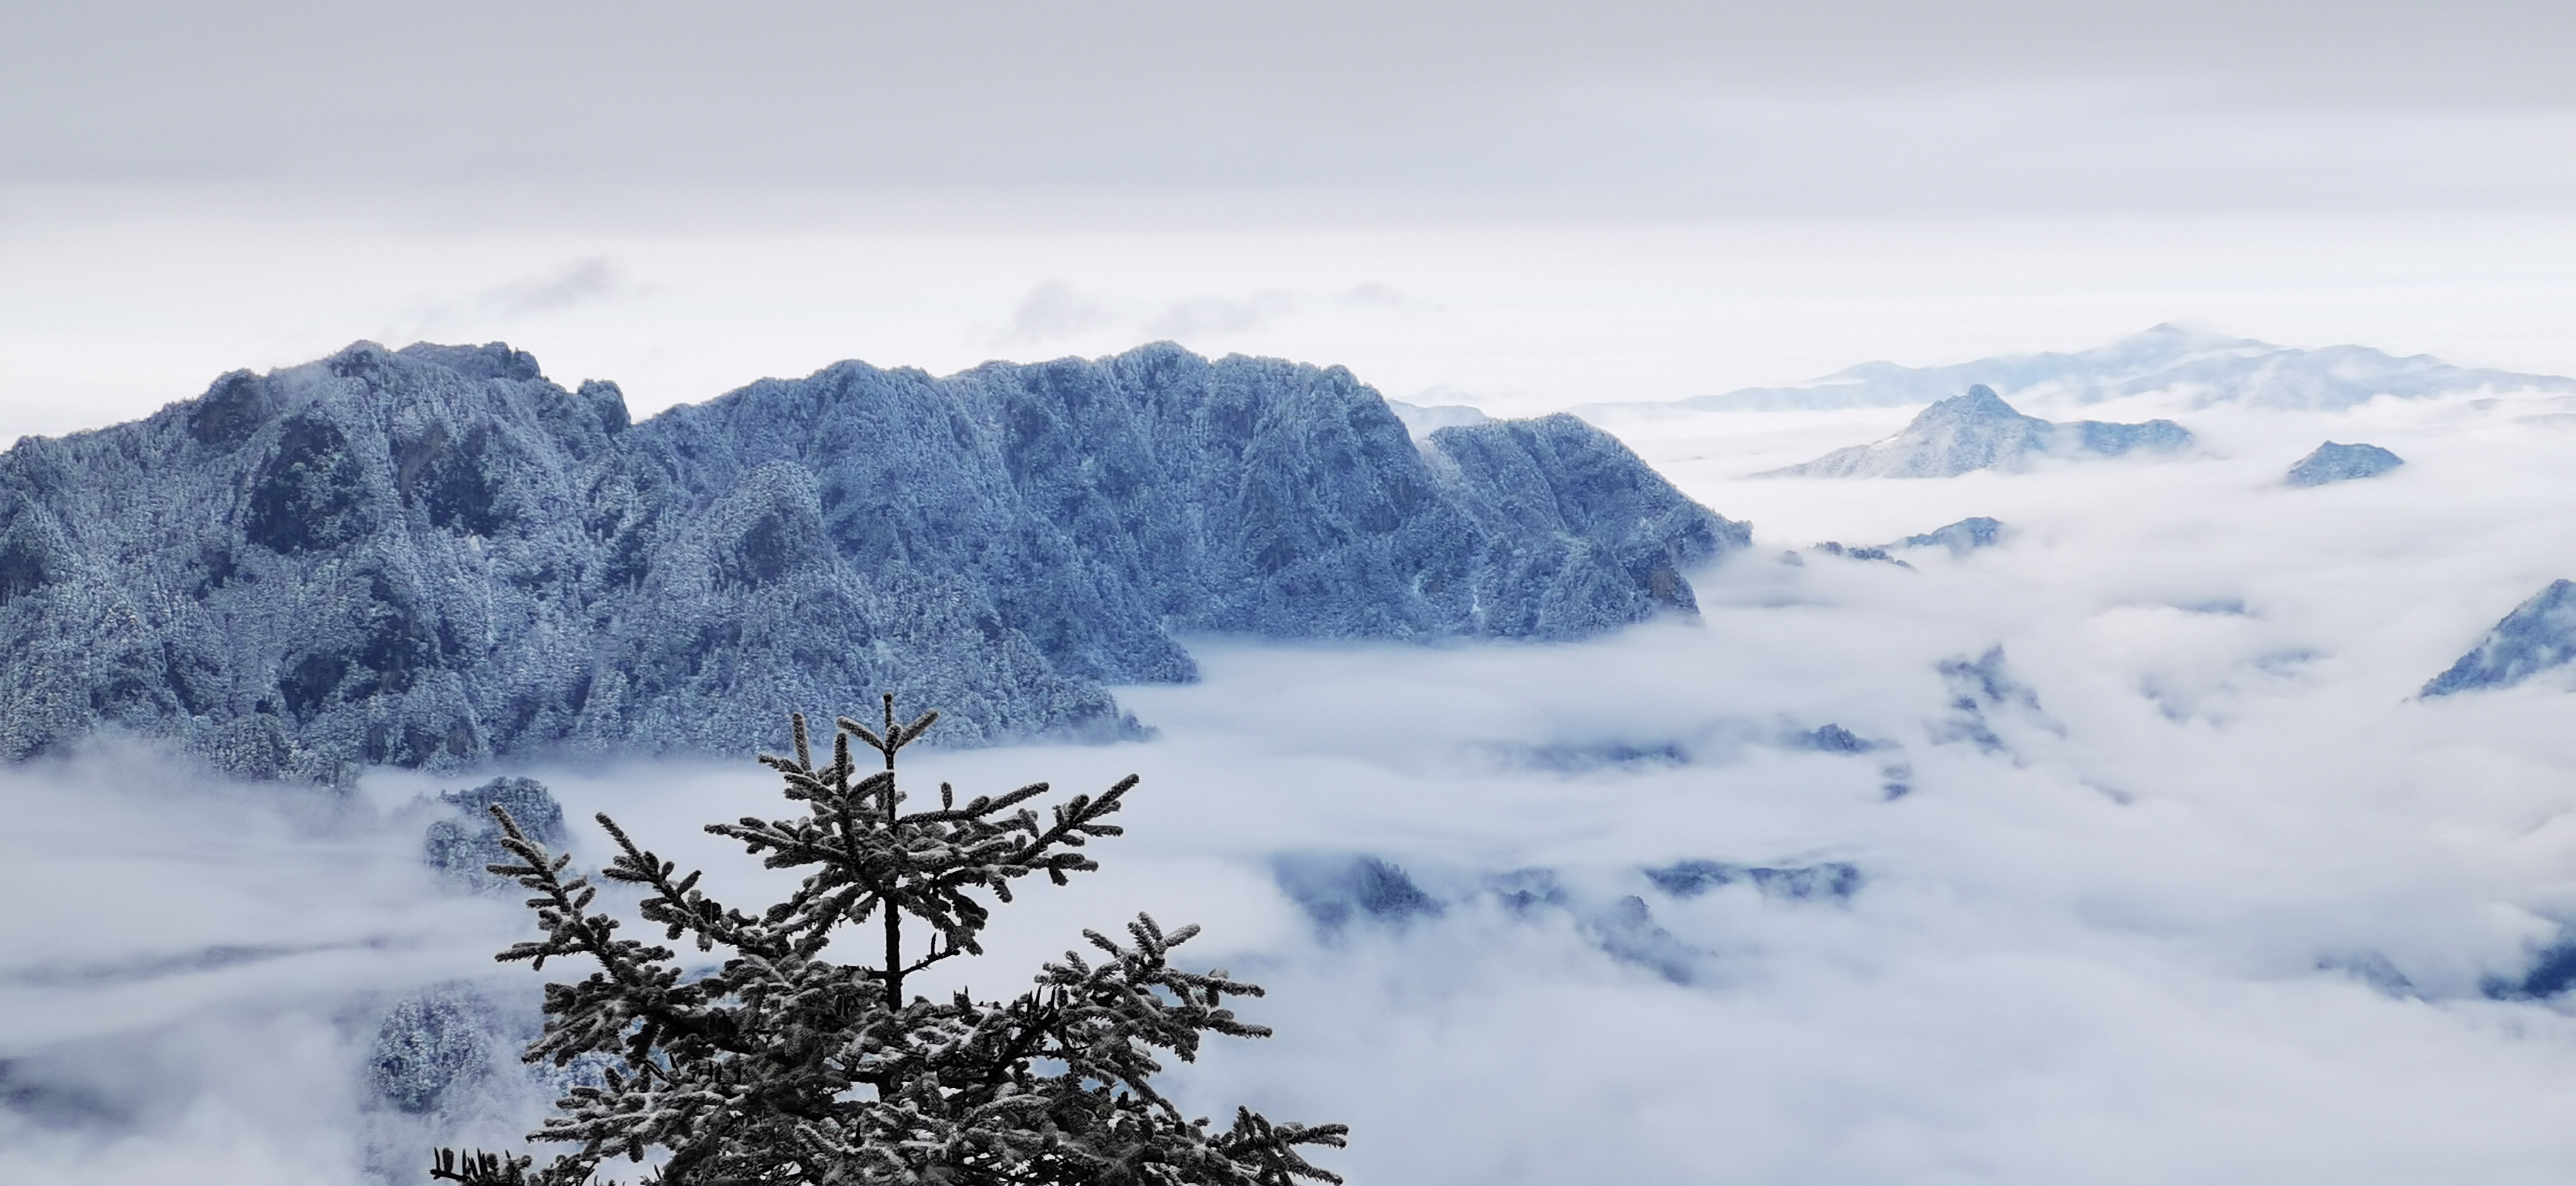 神农顶雪景图片